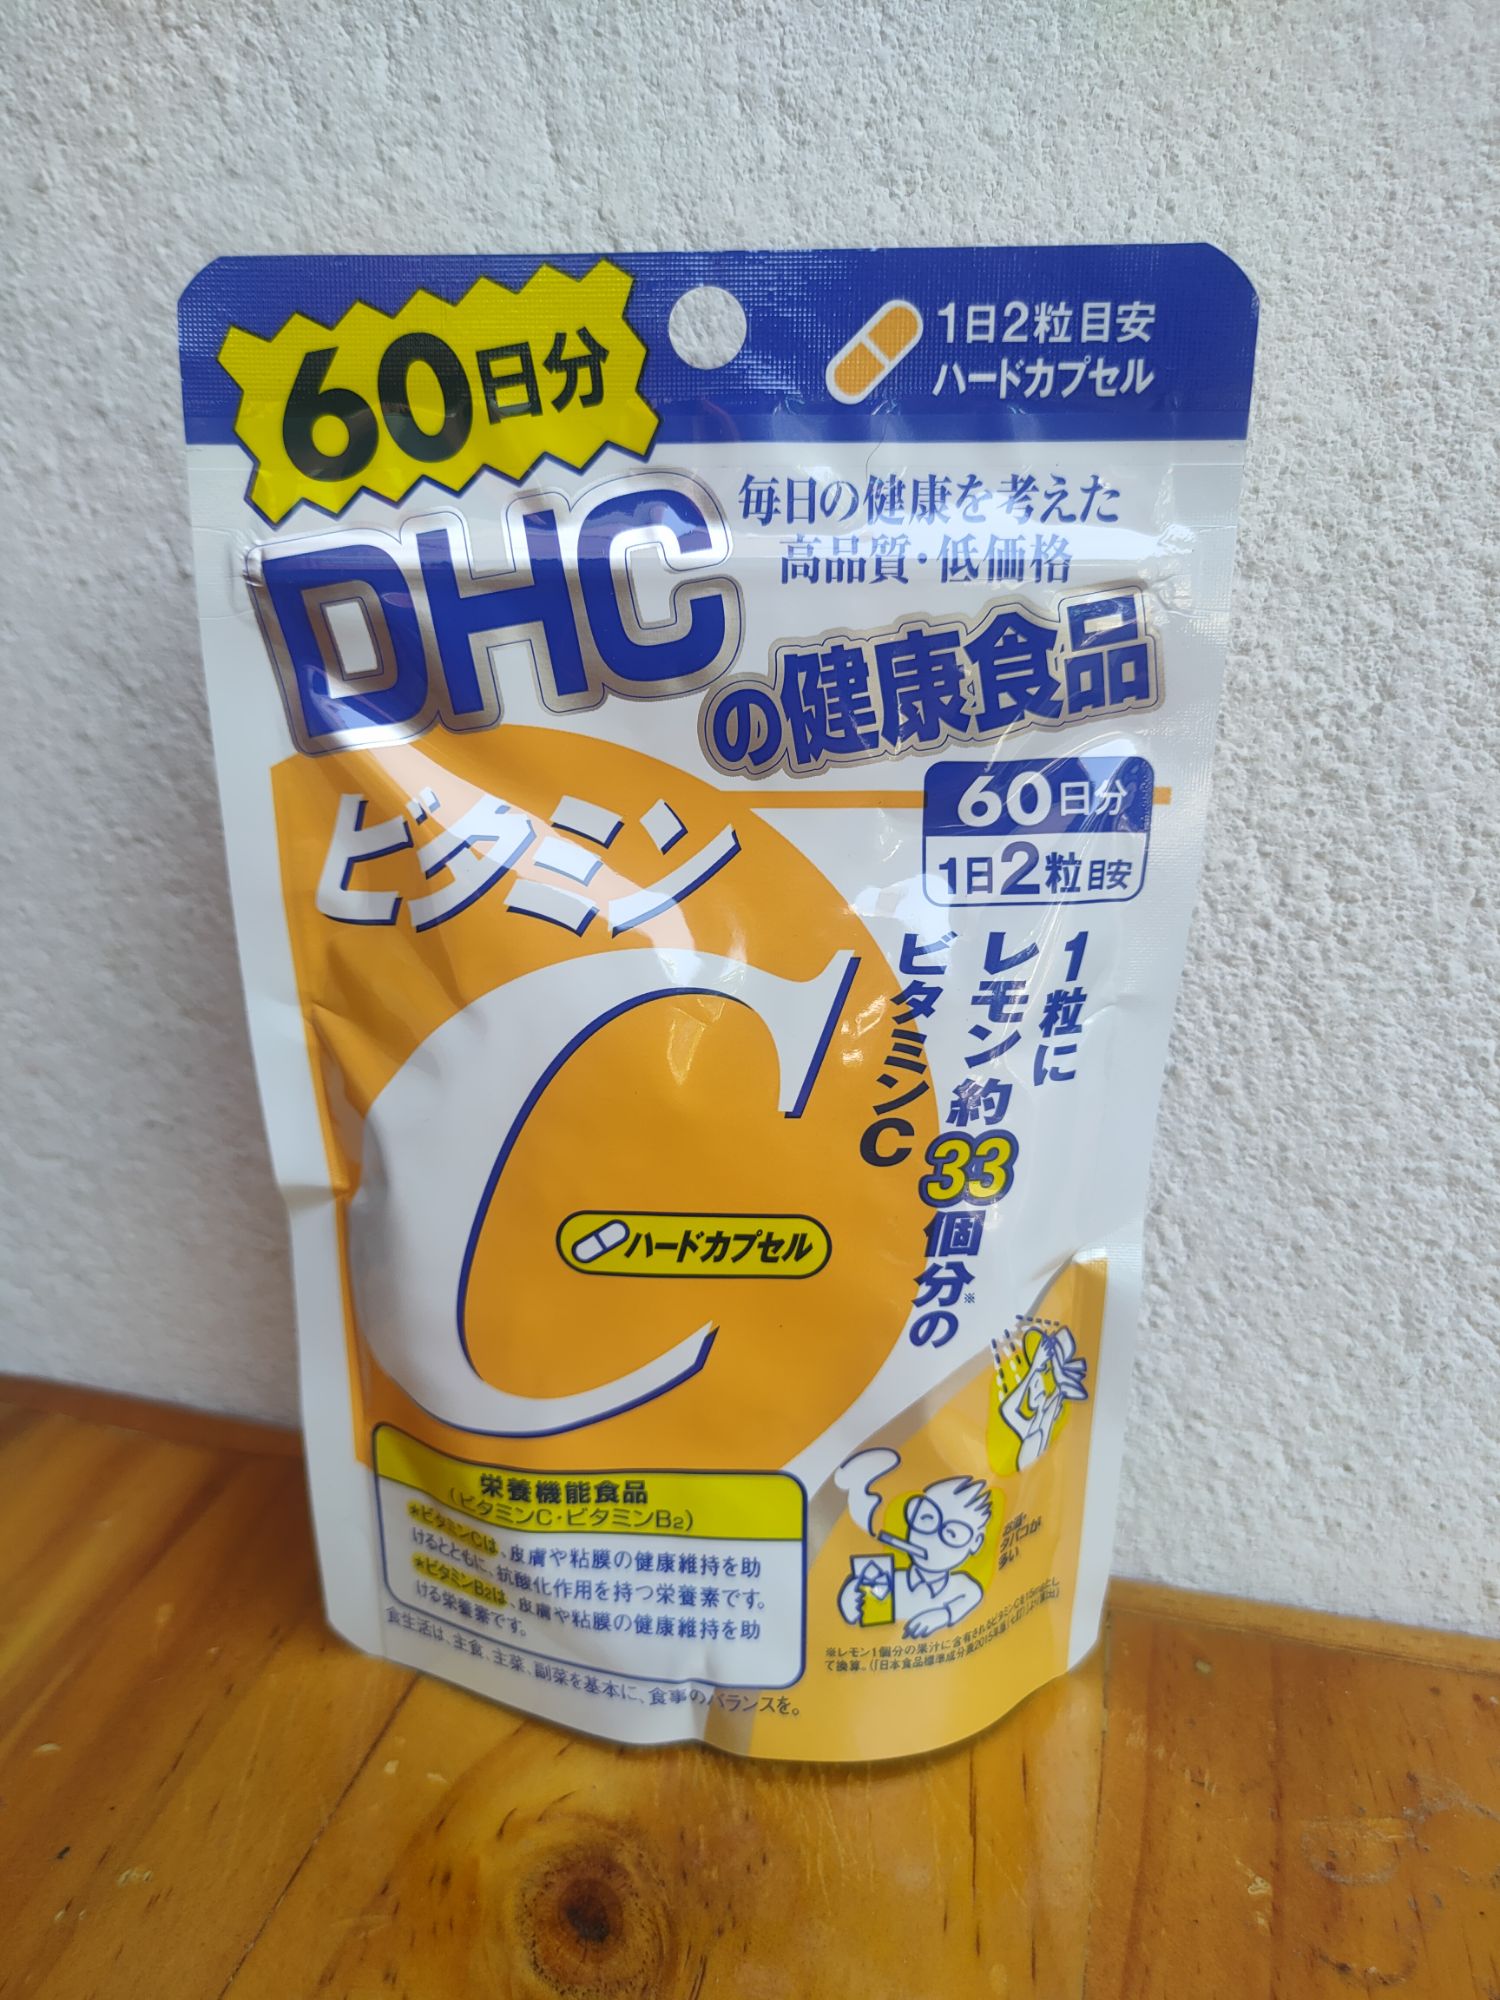 [[ราคาต่อซอง]] DHC Vitamin C 60 วัน ราคาดังกล่าวเป็นราคาต่อซองนะคะ